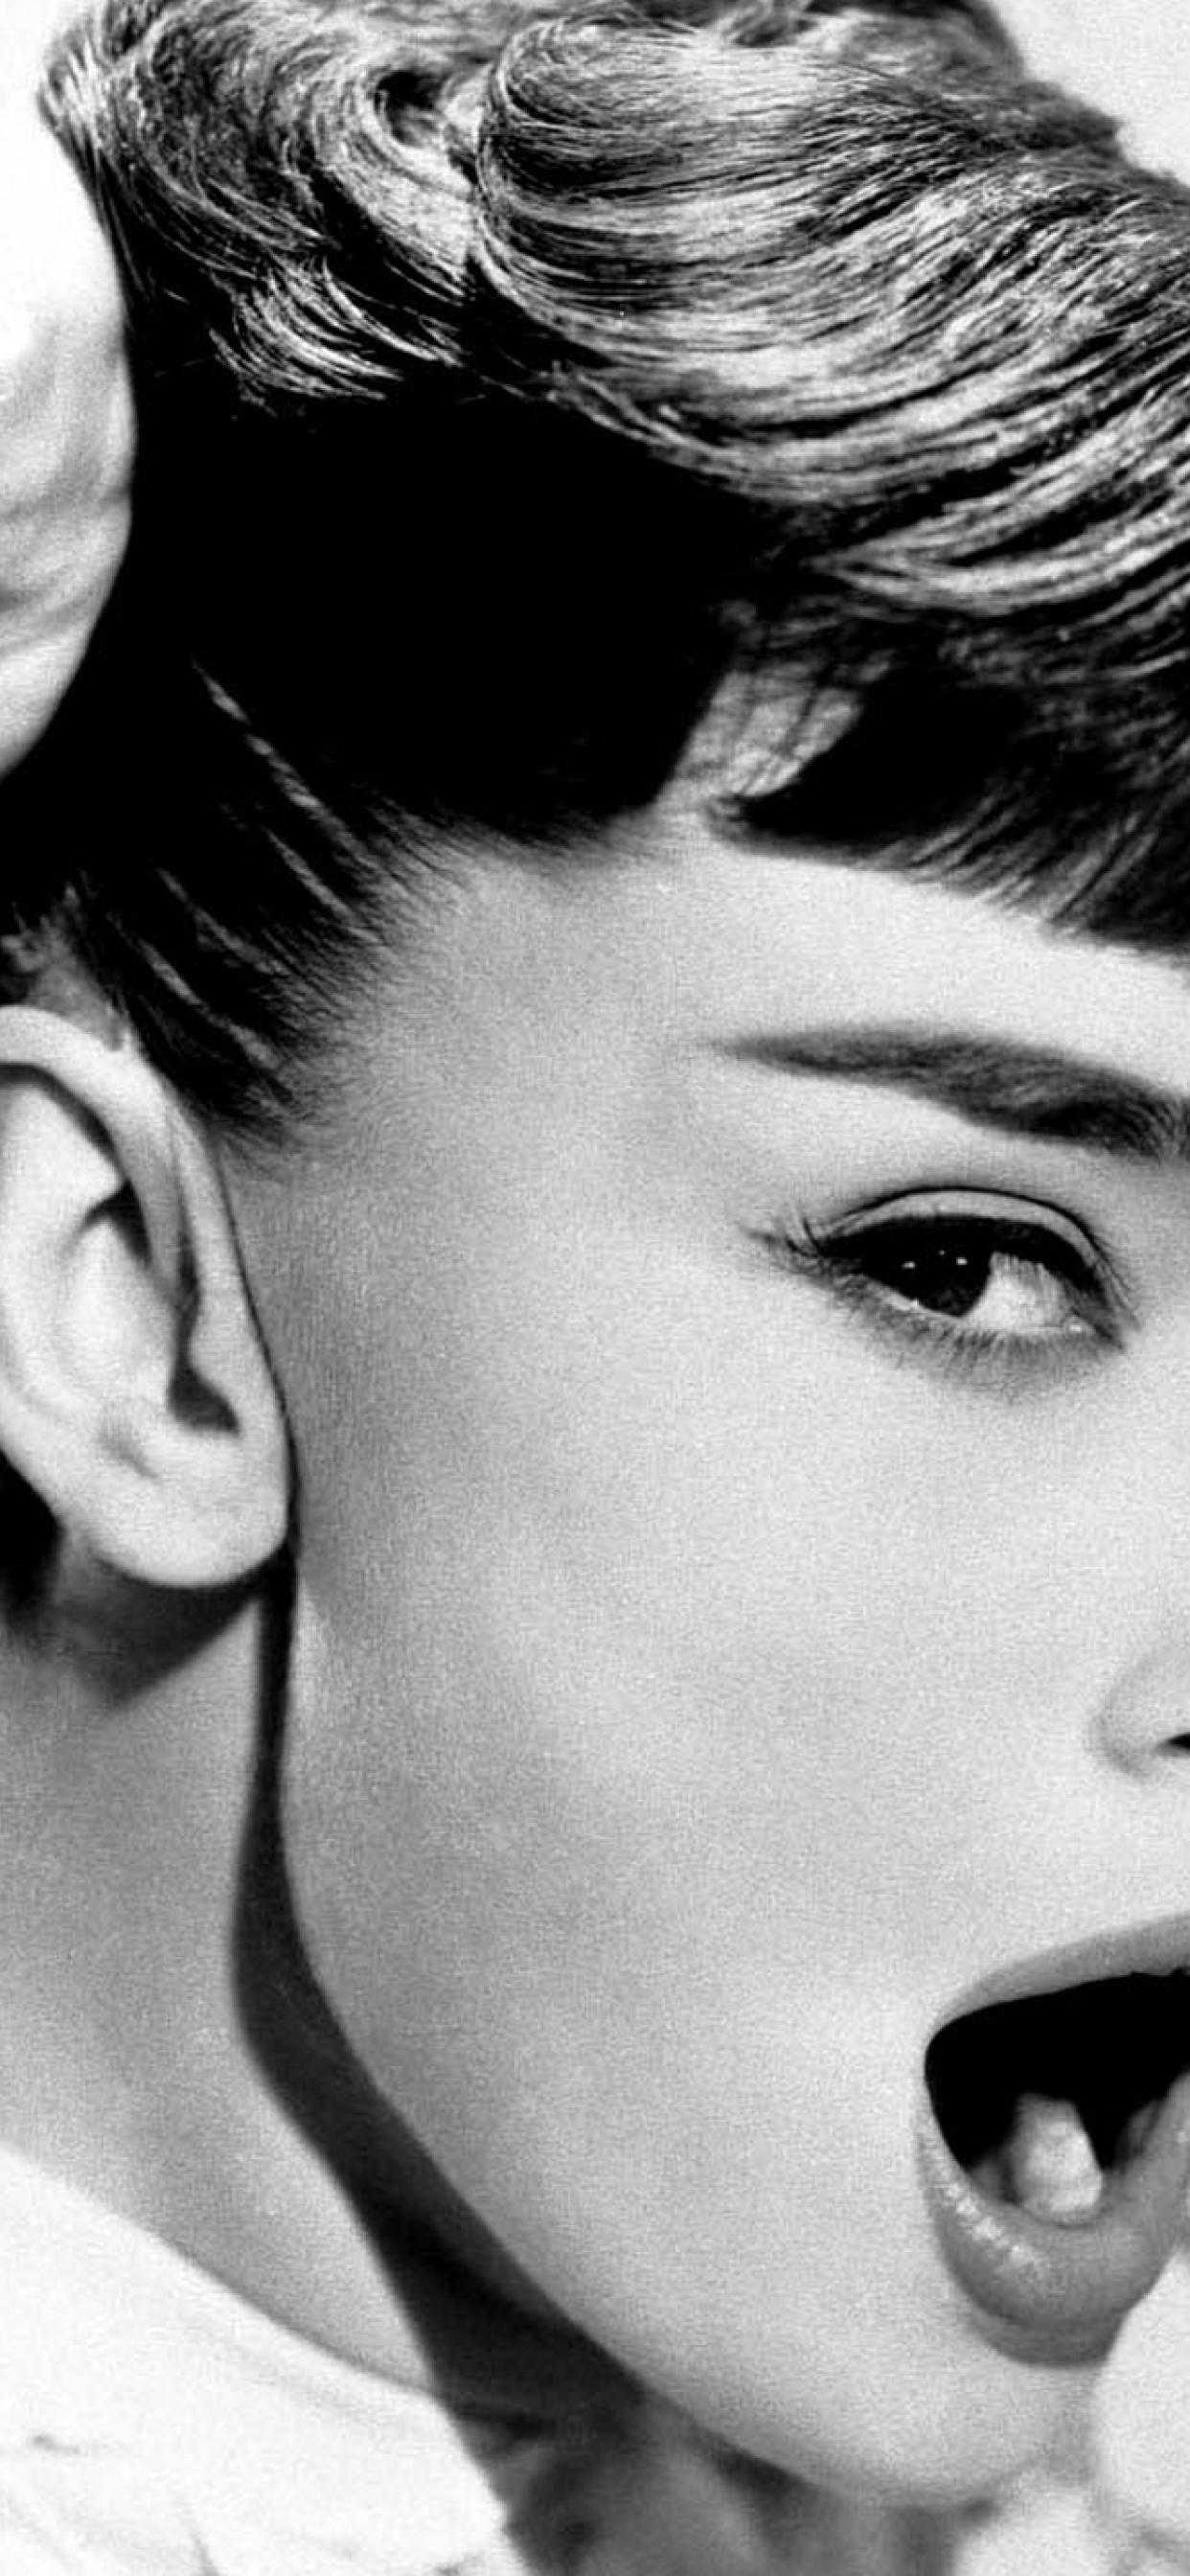 100+] Audrey Hepburn Wallpapers | Wallpapers.com